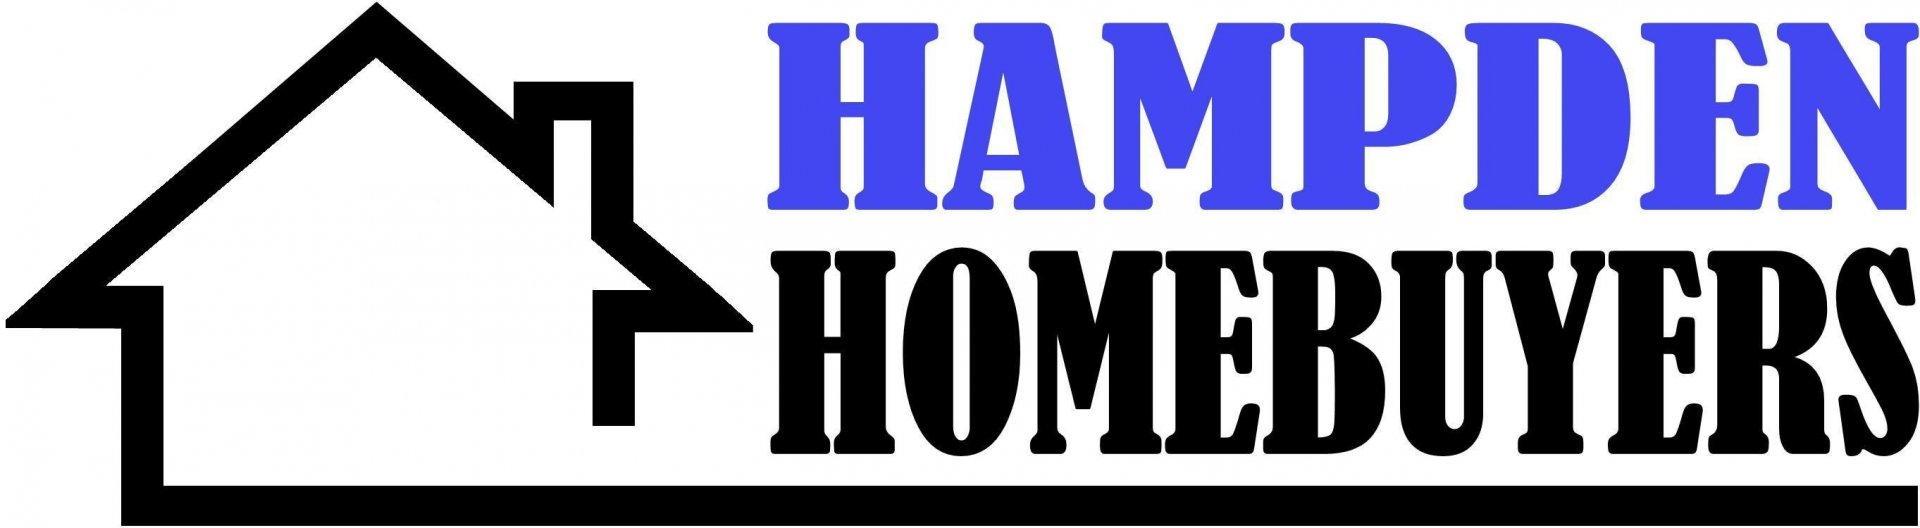 Hampden Homebuyers  logo